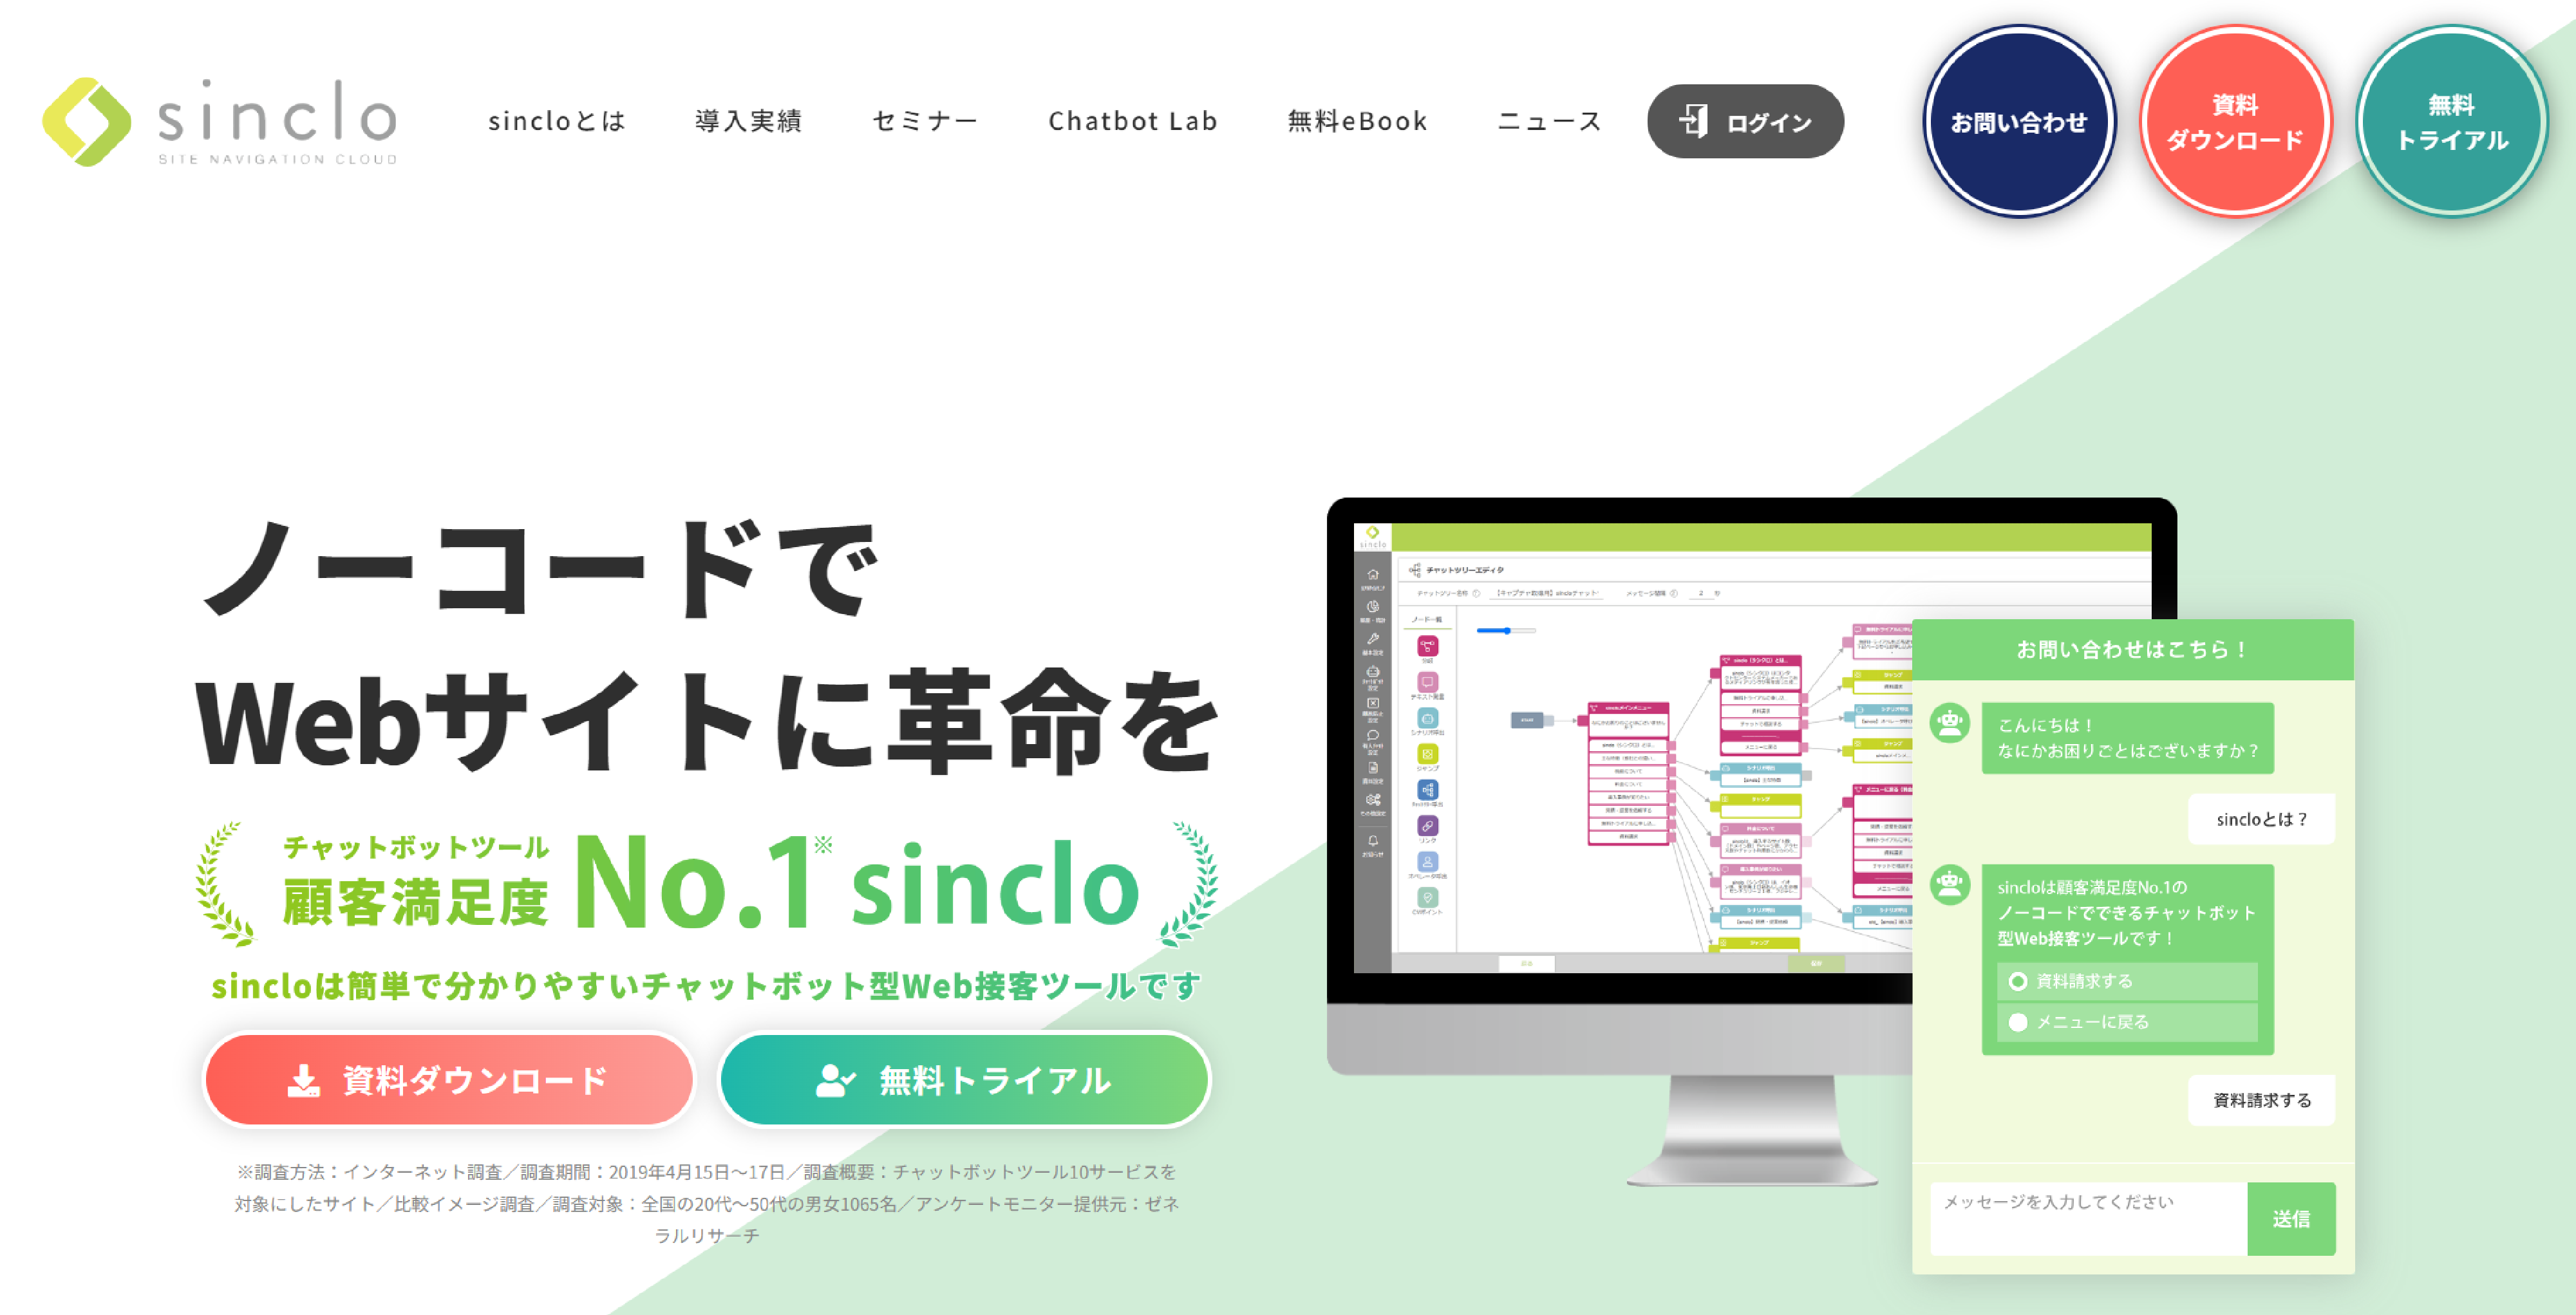 「sinclo」の製品サイトファーストビュー